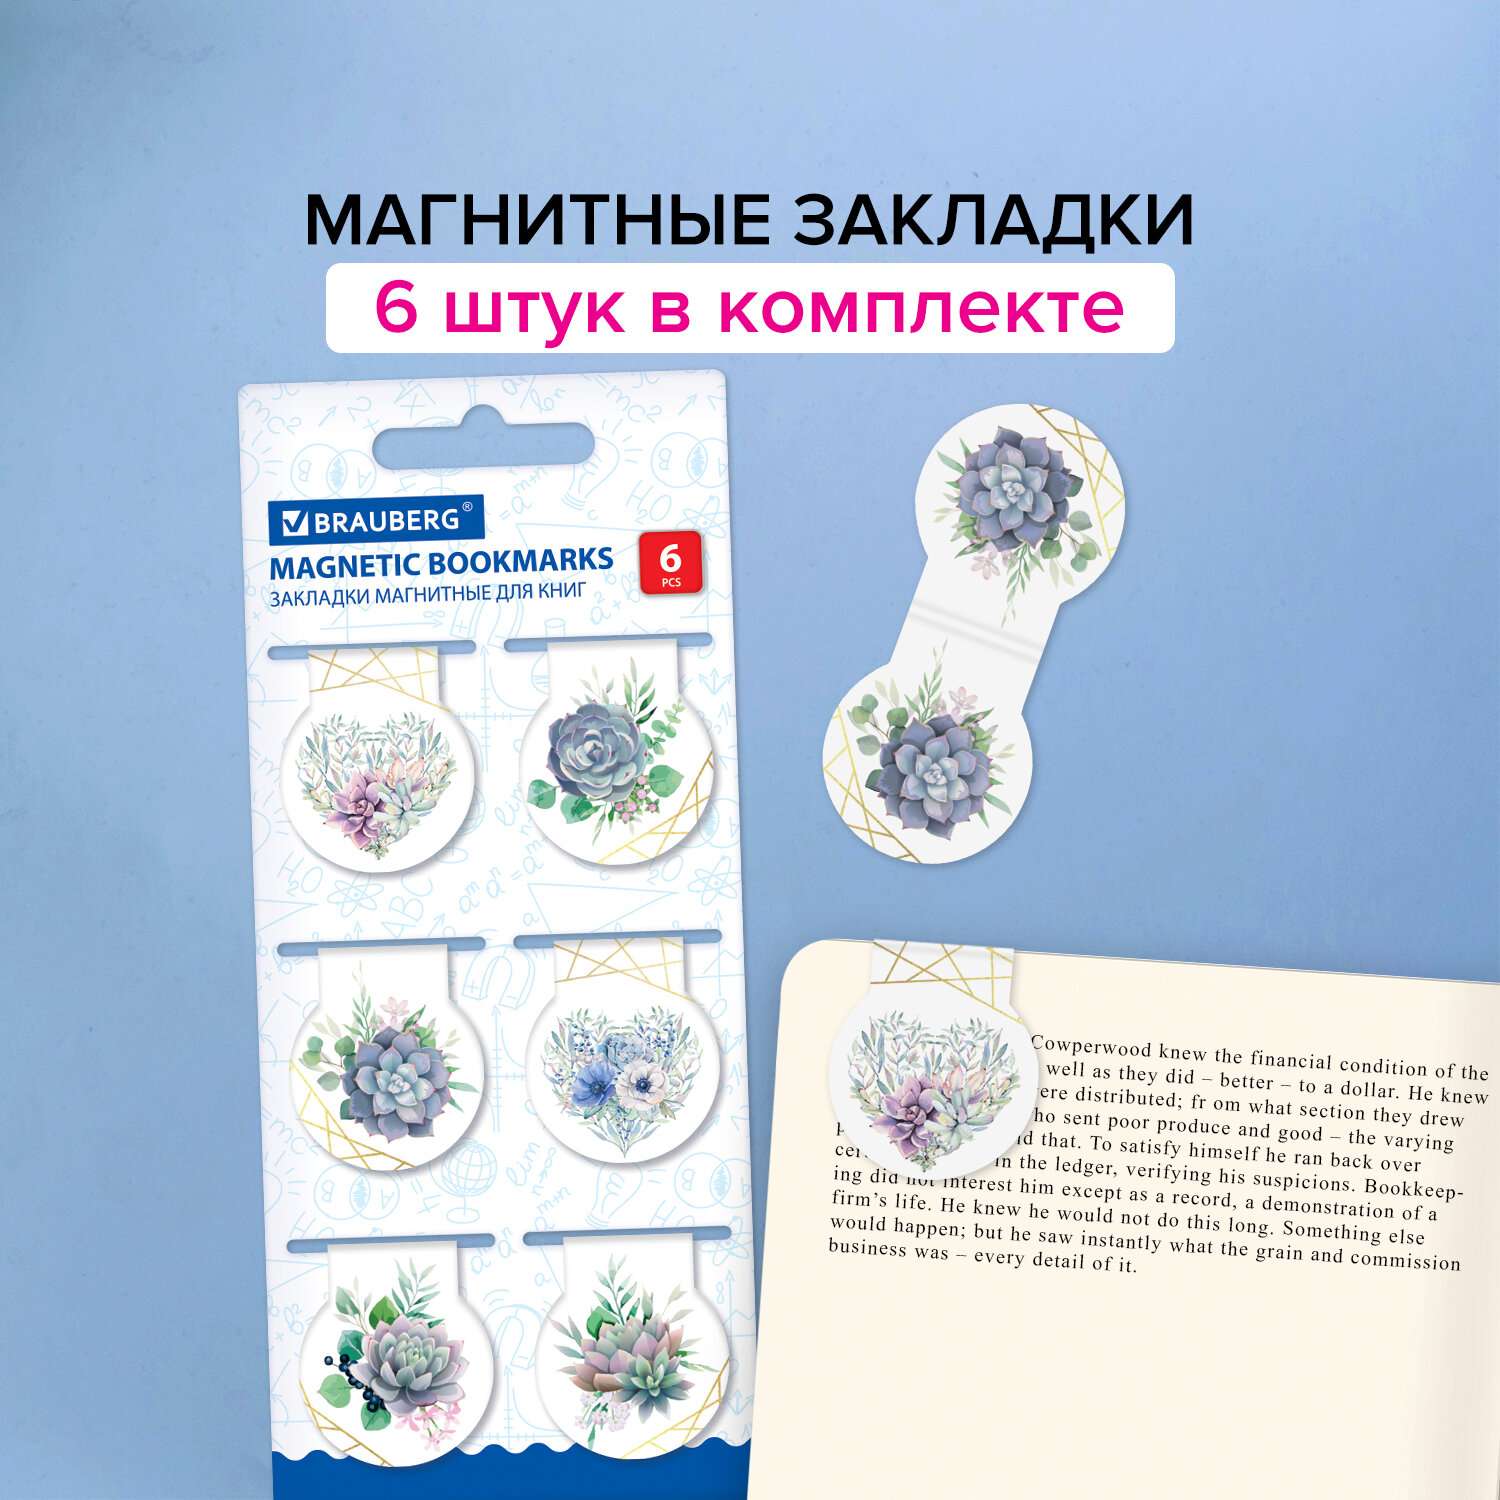 Закладки канцелярские Brauberg магнитные для книг в школу набор 6 штук - фото 2